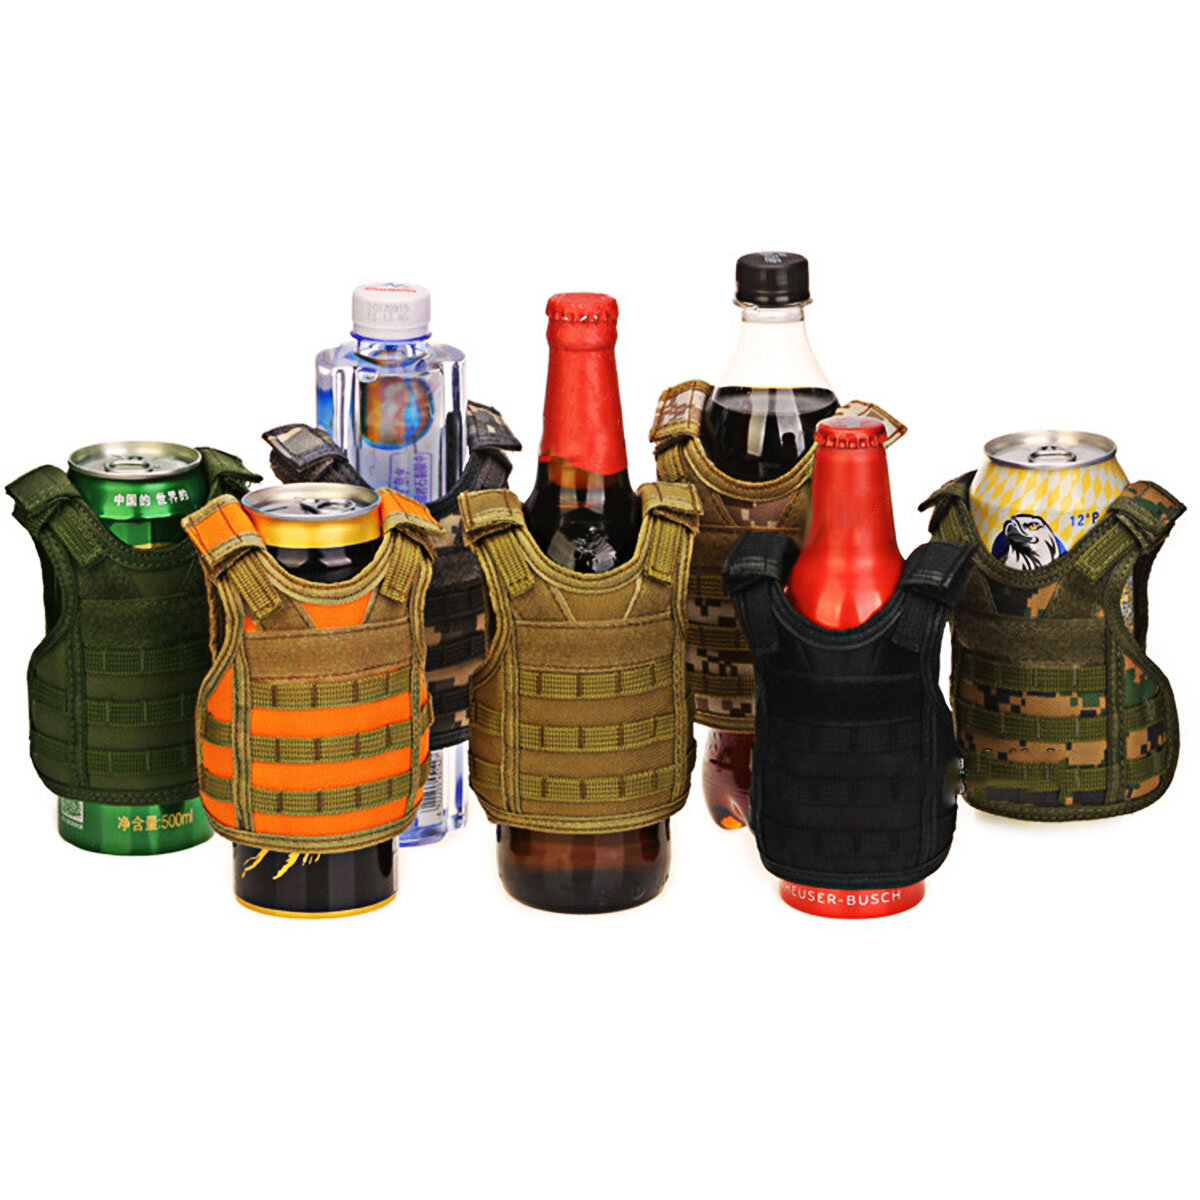 Izolator napojów Tactical Vest Beer Cooler Holder Travel Camping Portable Can Cooler